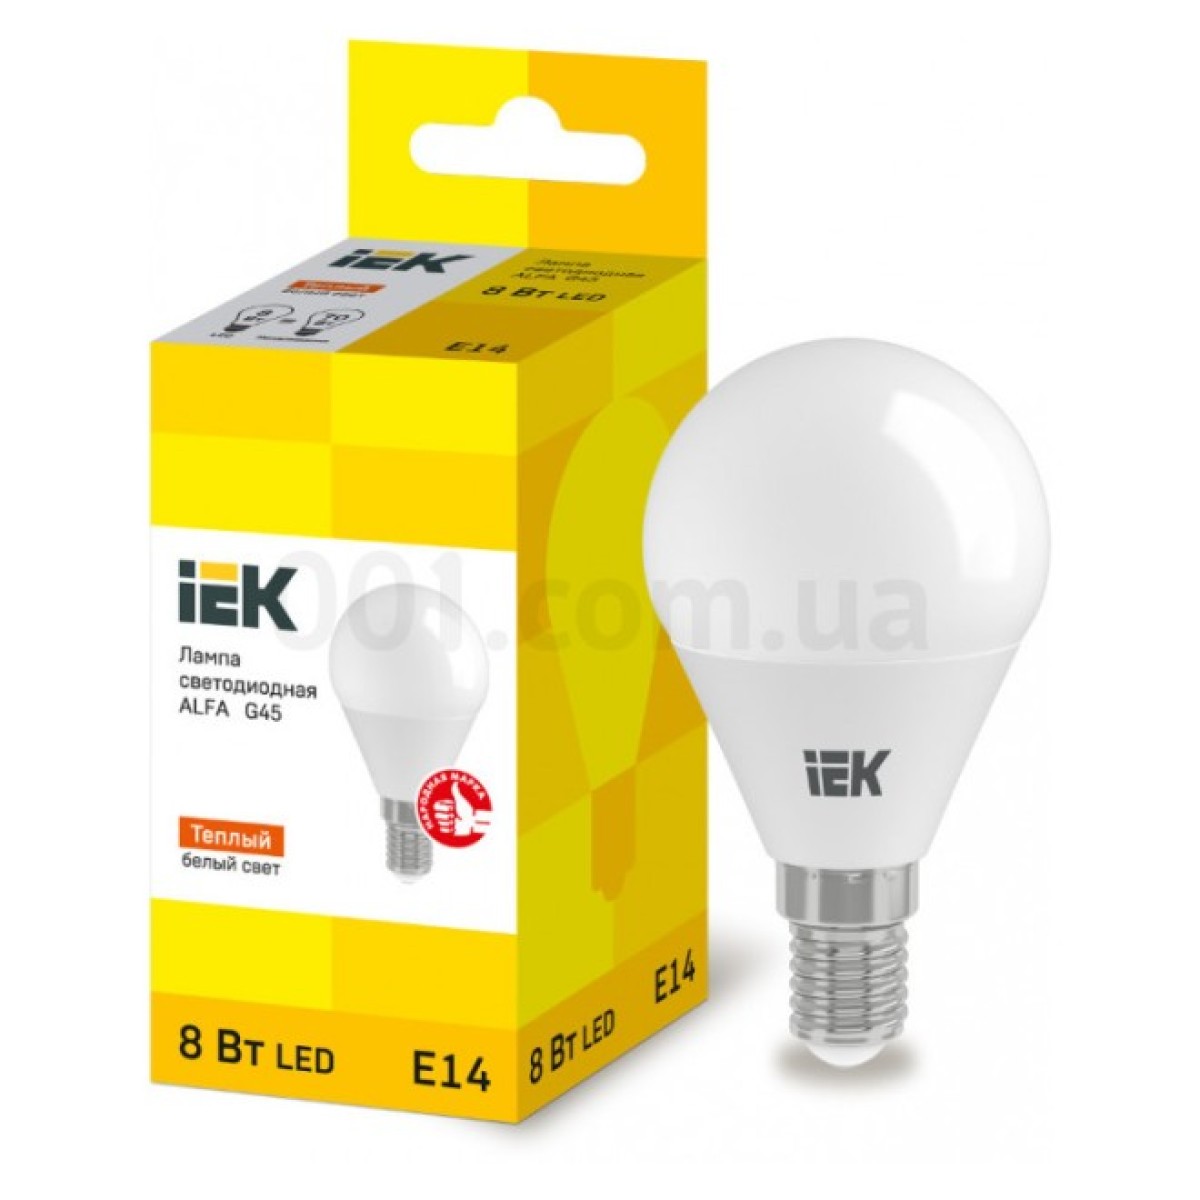 Світлодіодна лампа LED ALFA G45 (куля) 8 Вт 230В 3000К E14, IEK 256_256.jpg